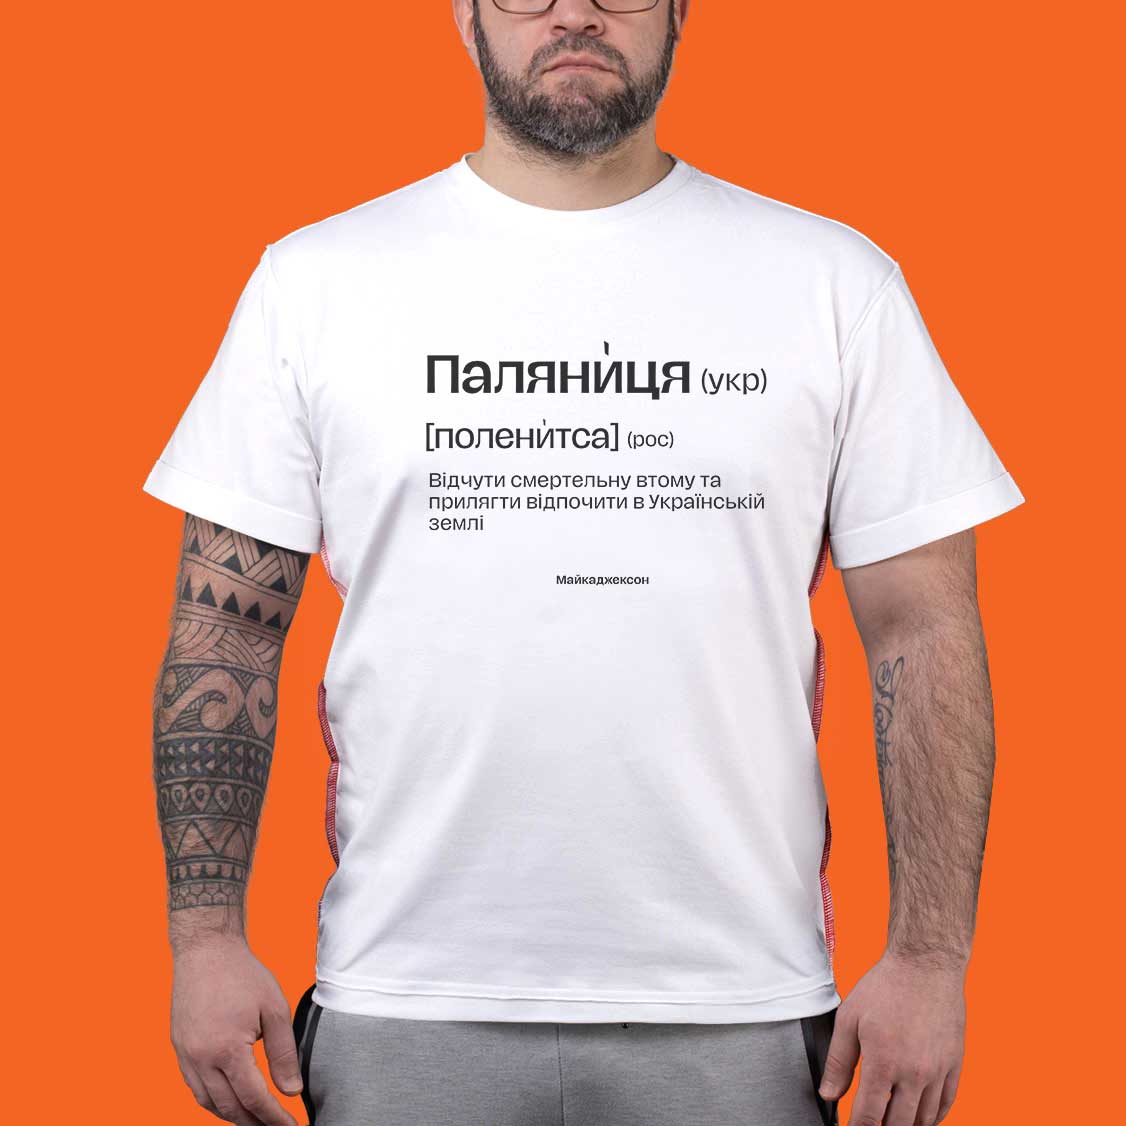 МАЙКАДЖЕКСОН - Патріотична футболка Паляниця